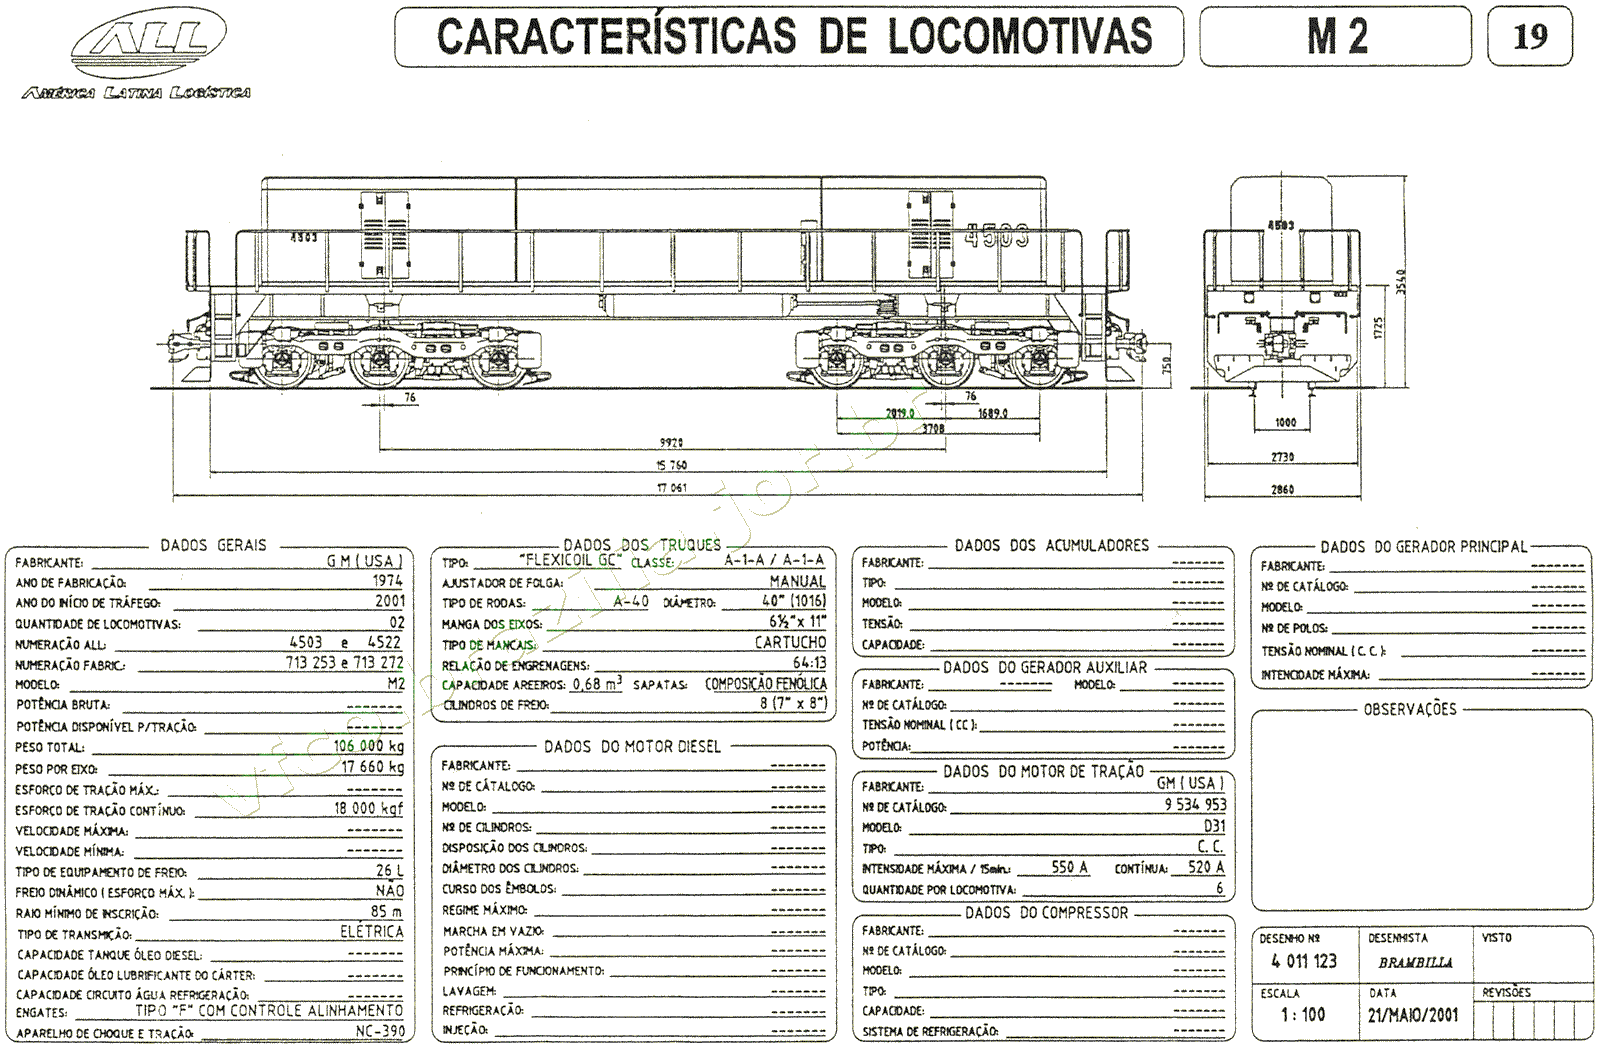 Desenho, medidas e especificações da Locomotiva "slug" M2 da ferrovia ALL